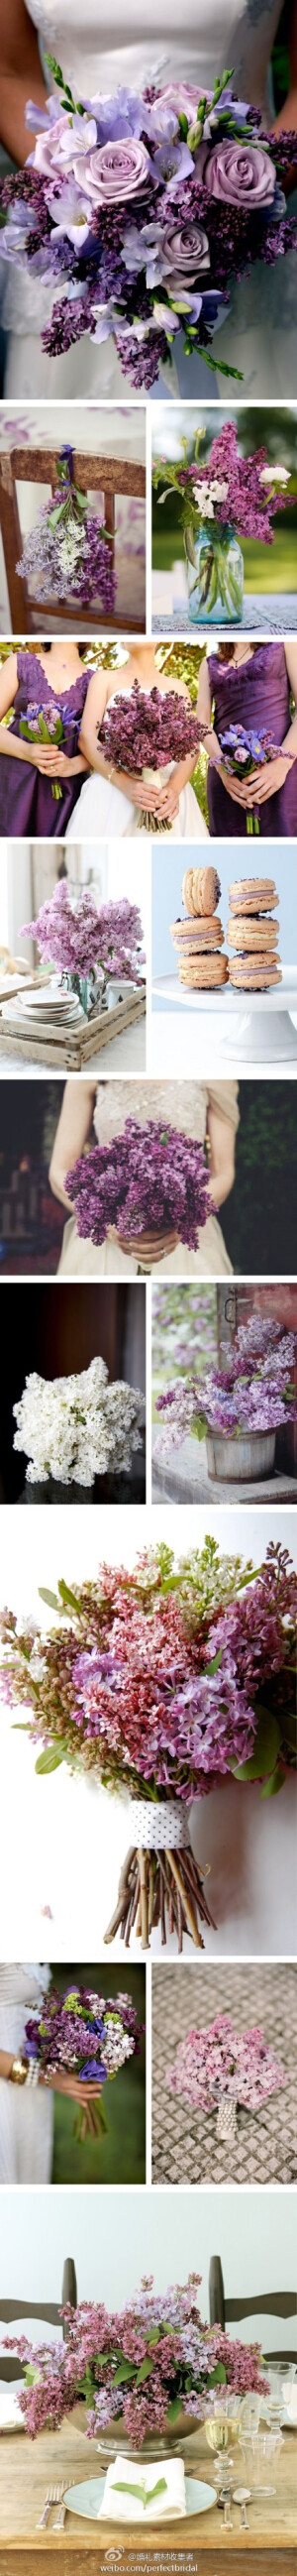 紫色丁香花的婚礼花艺灵感